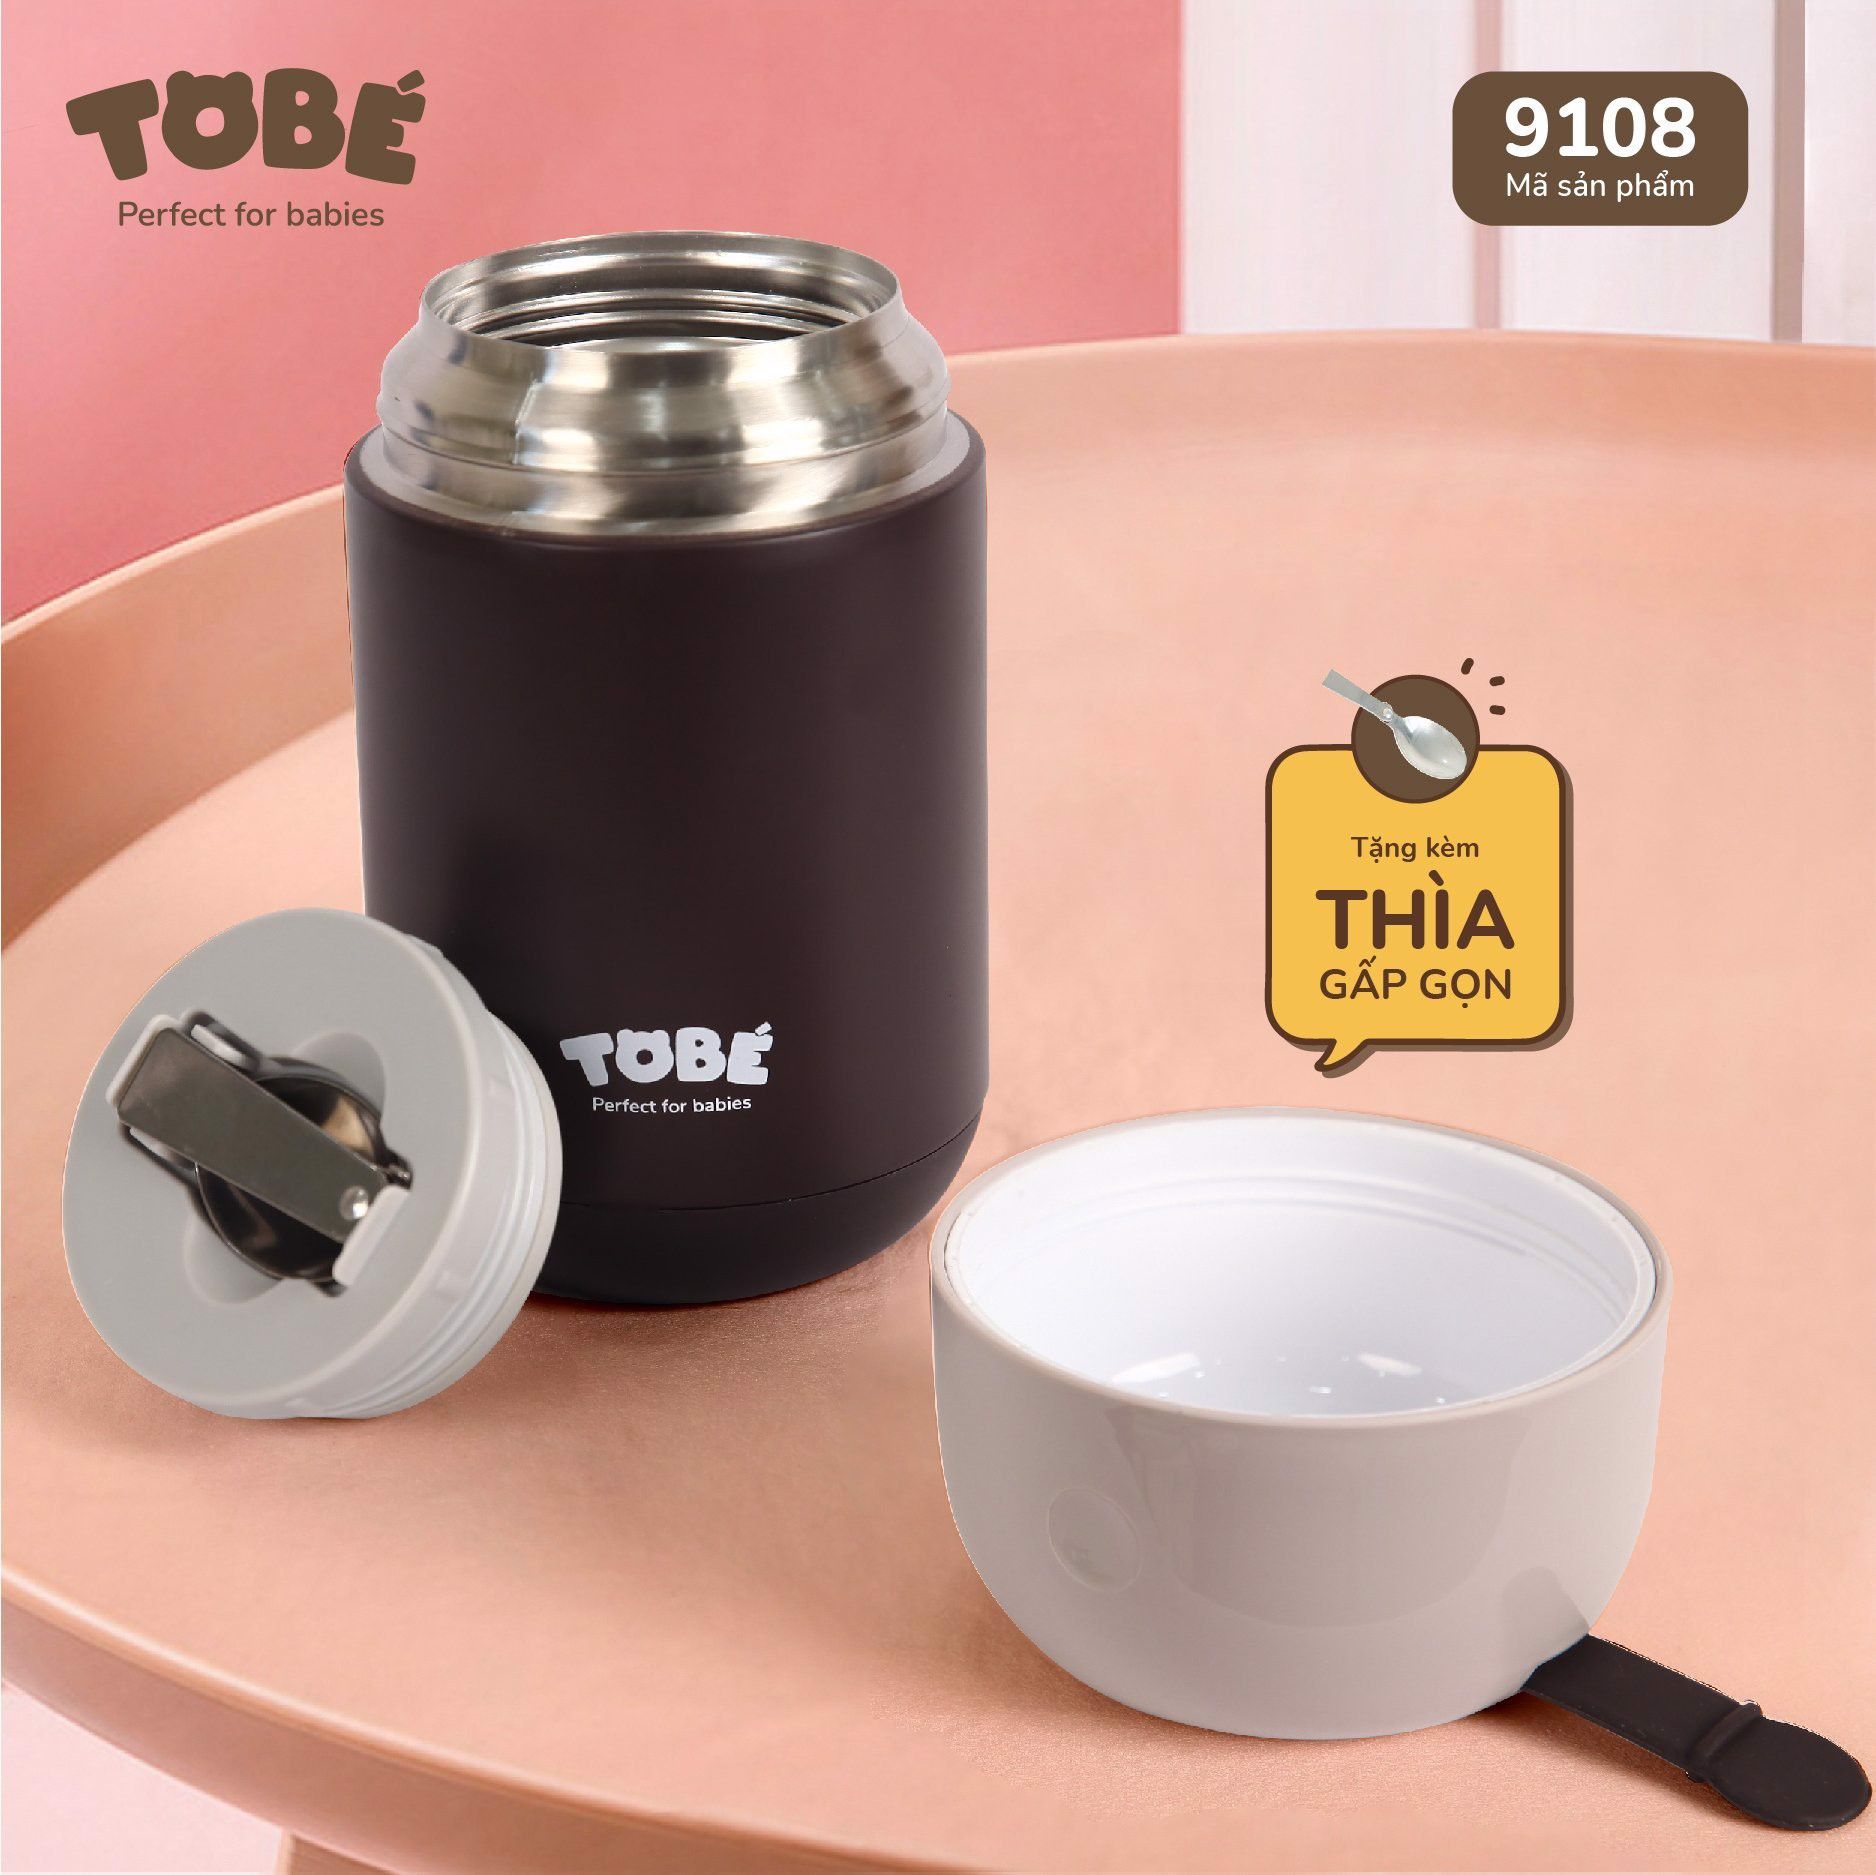  Bình ủ cháo Tobe (9108) 